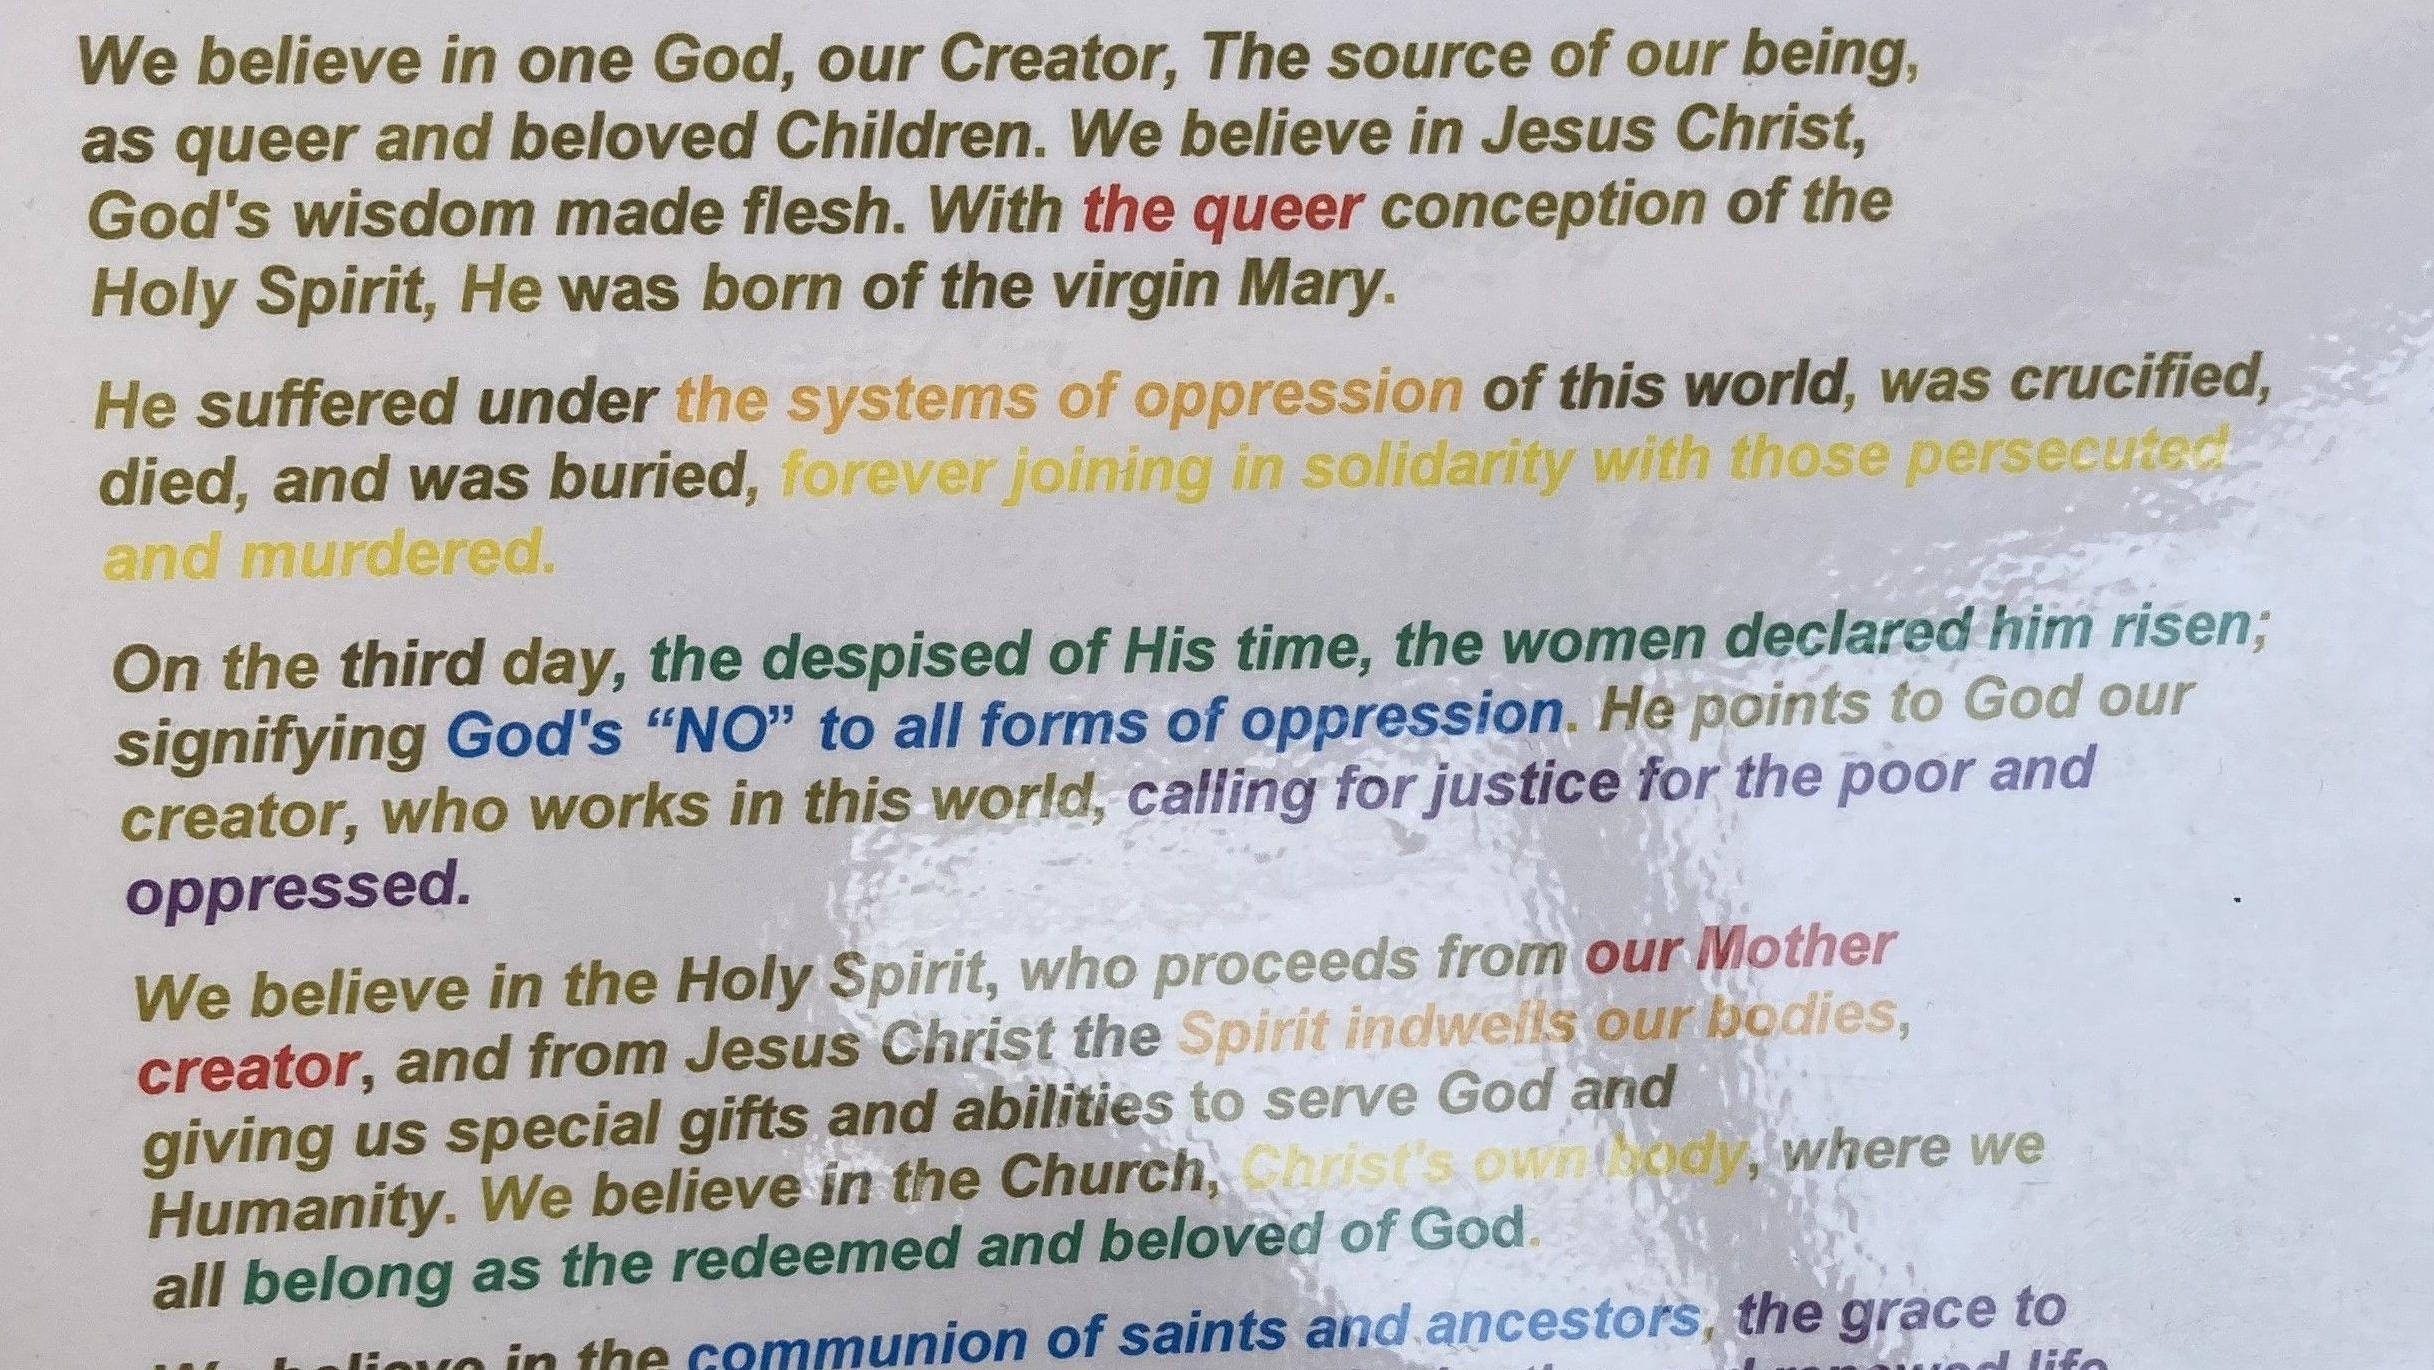 Folha impressa com versão nova do Credo dos Apóstolos - escrito com diferentes cores, lembrando o arco-íris